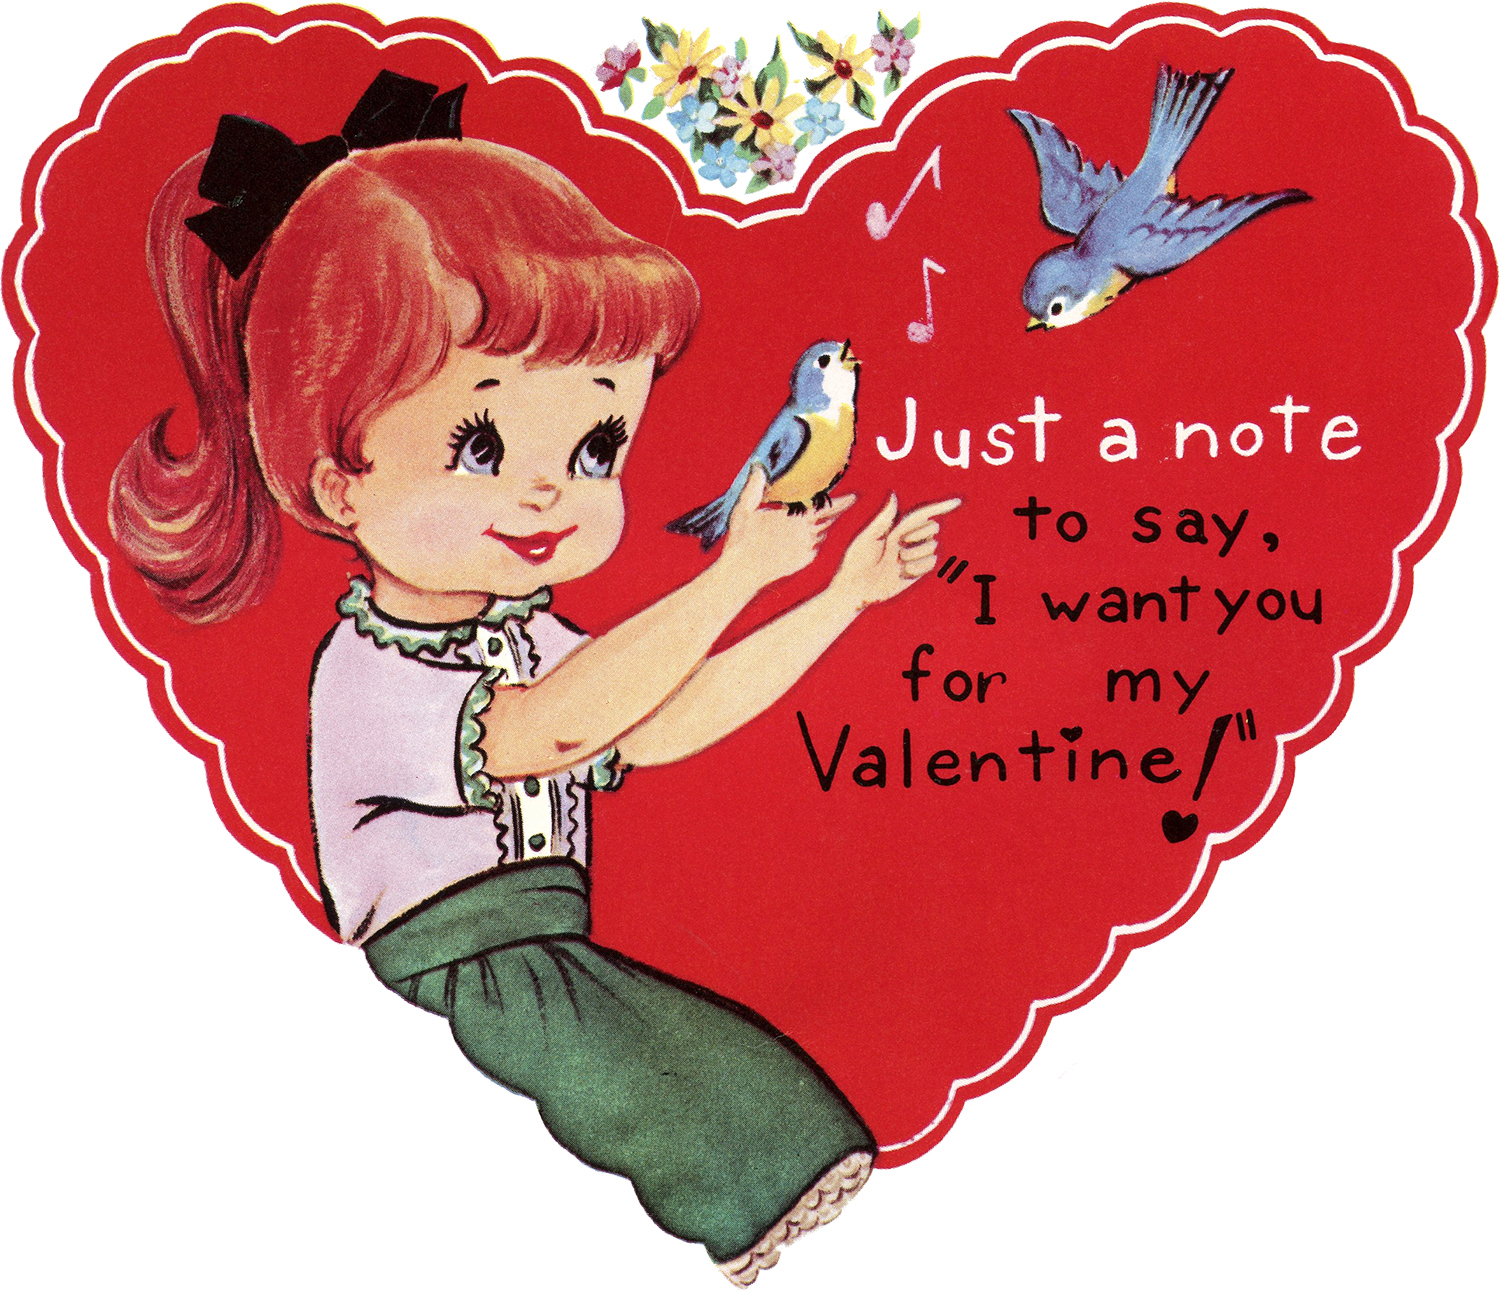 Retro-Valentine-Heart-Image-GraphicsFairy - The Graphics Fairy